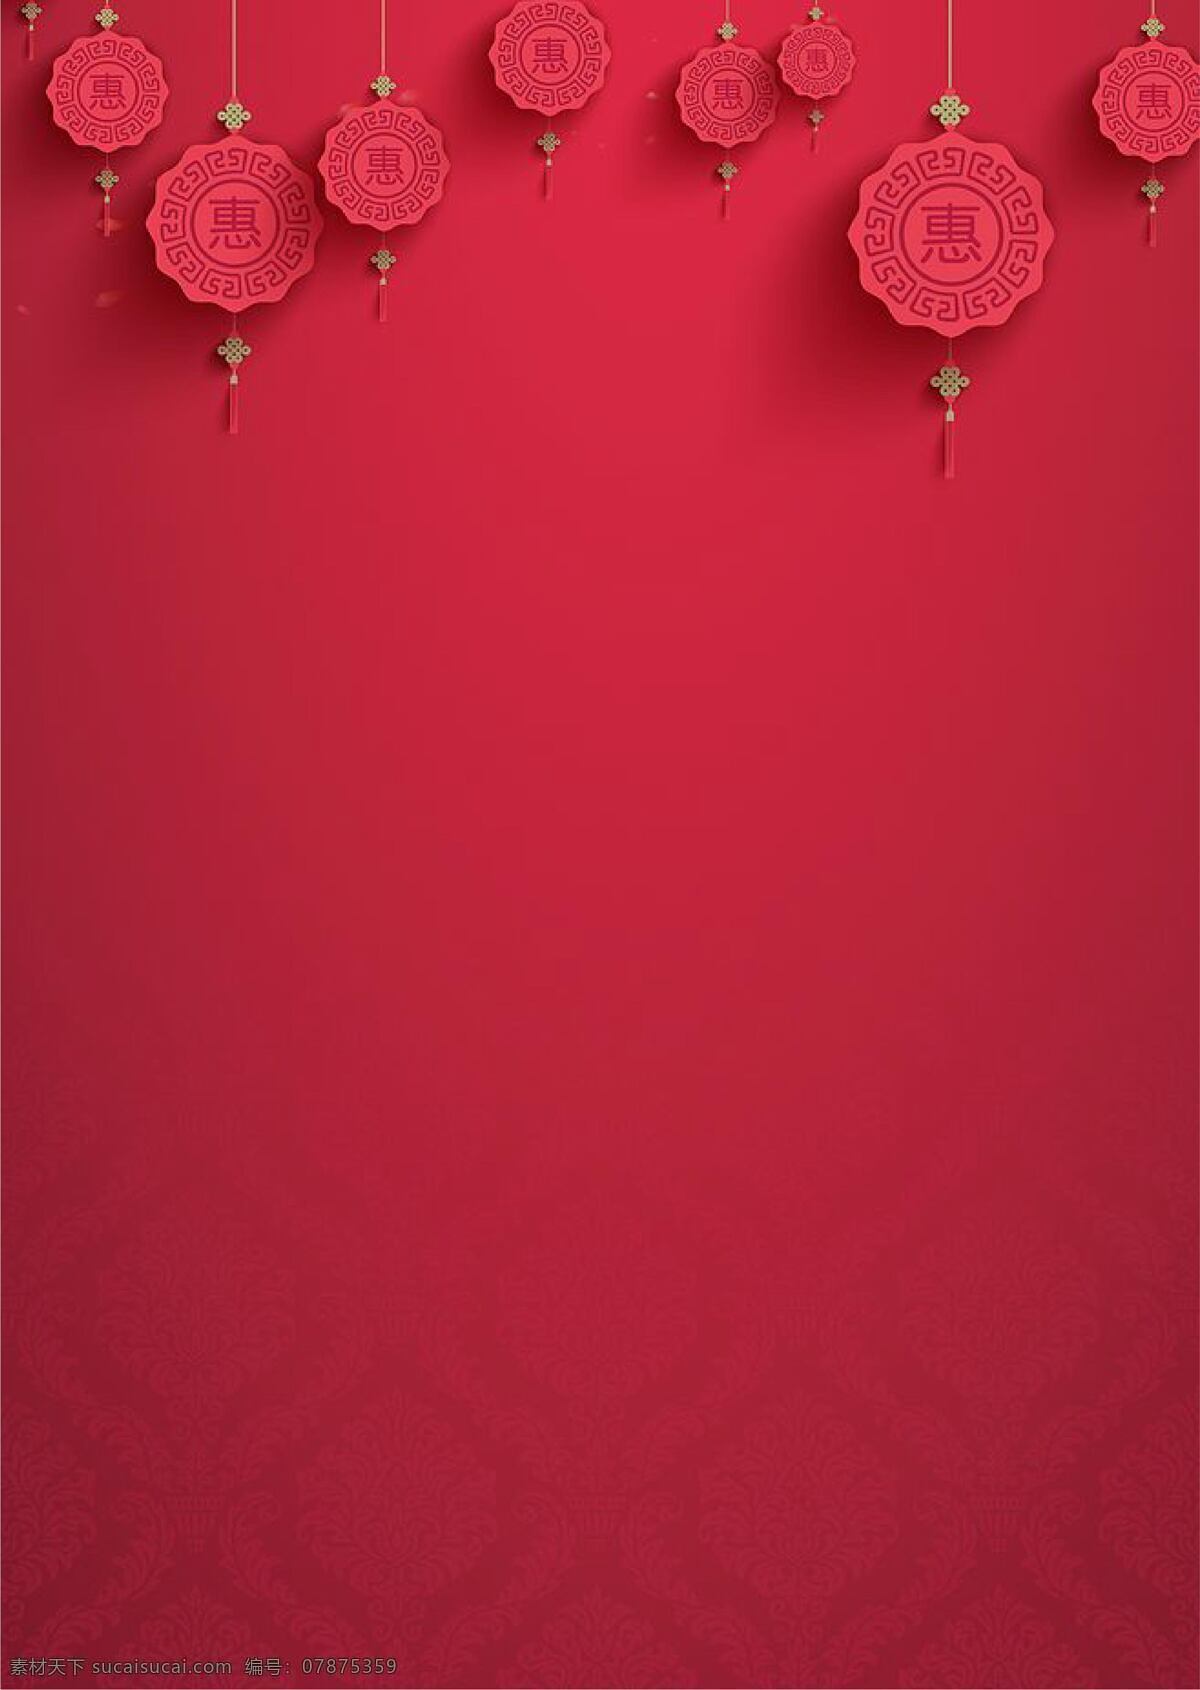 红色 中 国风 海报 背景 元素 国庆节 底纹边框 背景底纹